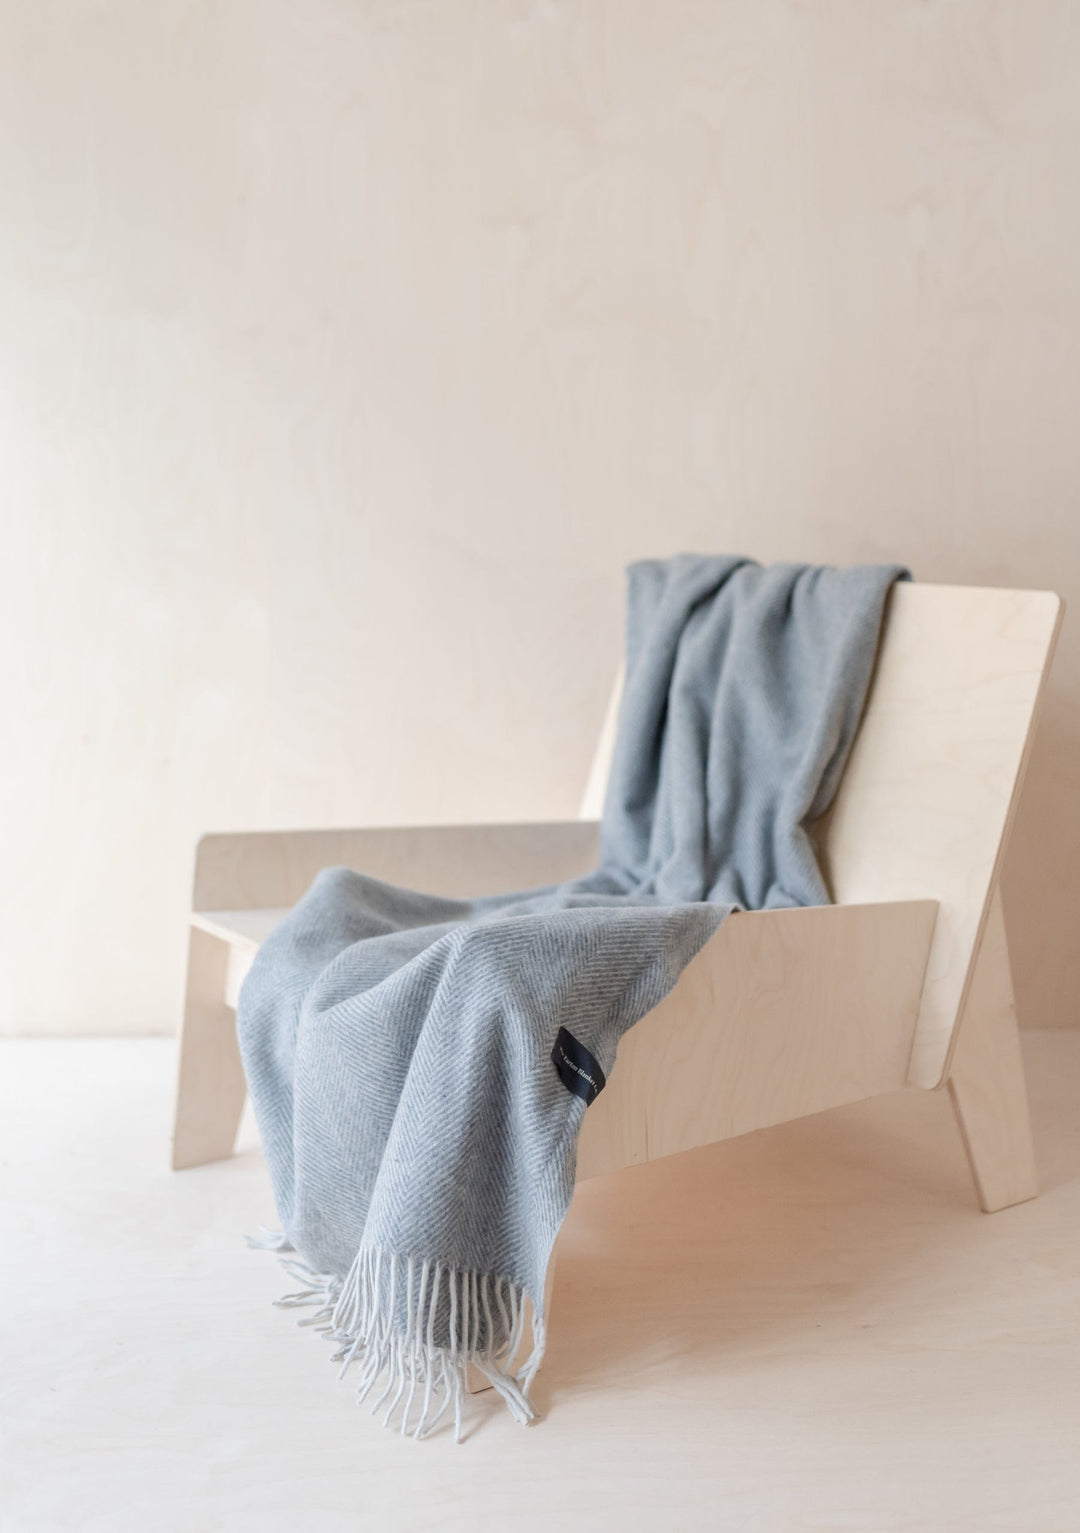 Recycled Wool Small Blanket in Charcoal Herringbone